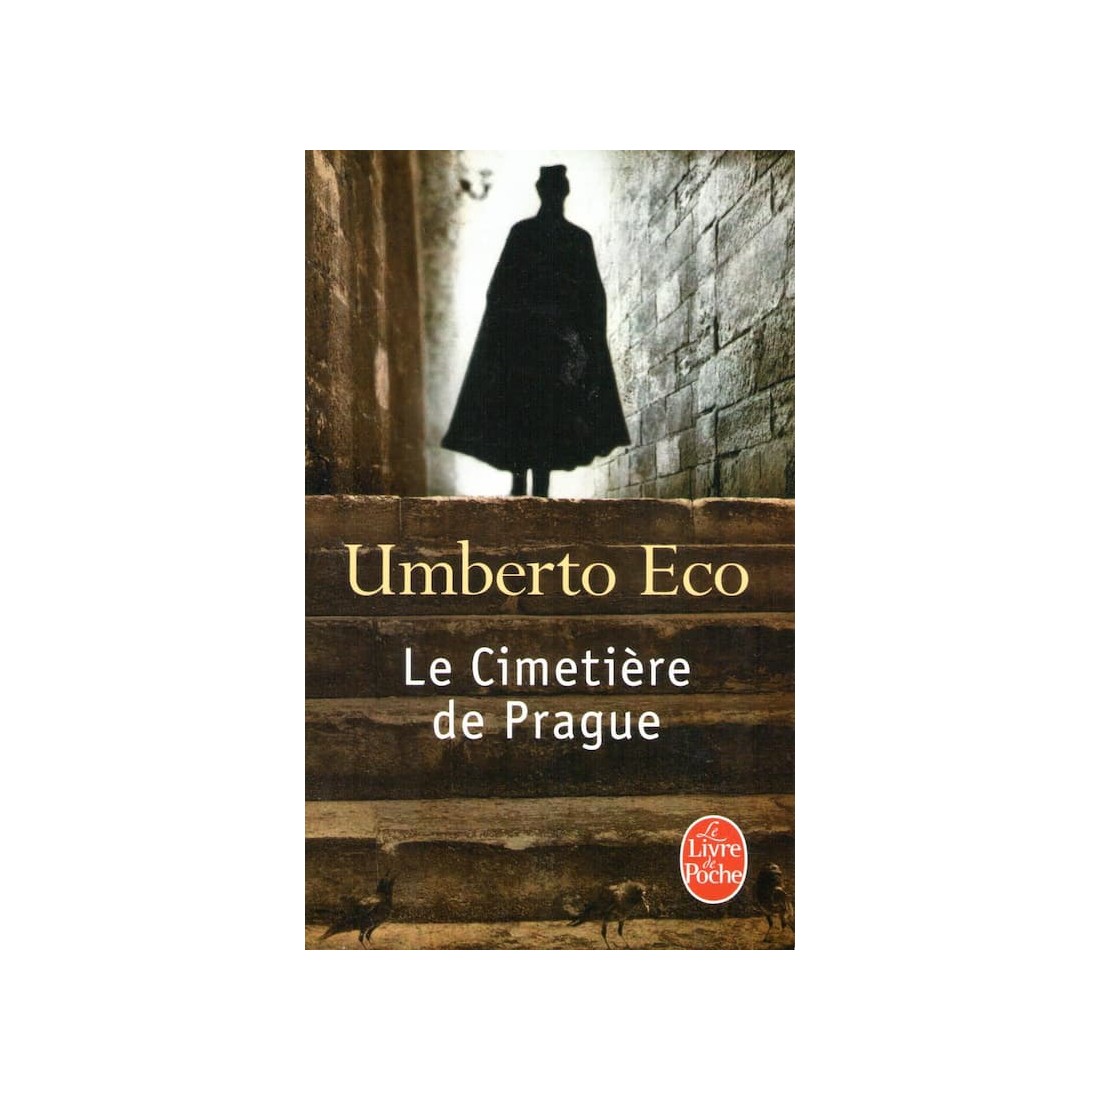 Le cimetiere de Prague - Roman de Umberto Eco - Ocazlivres.com